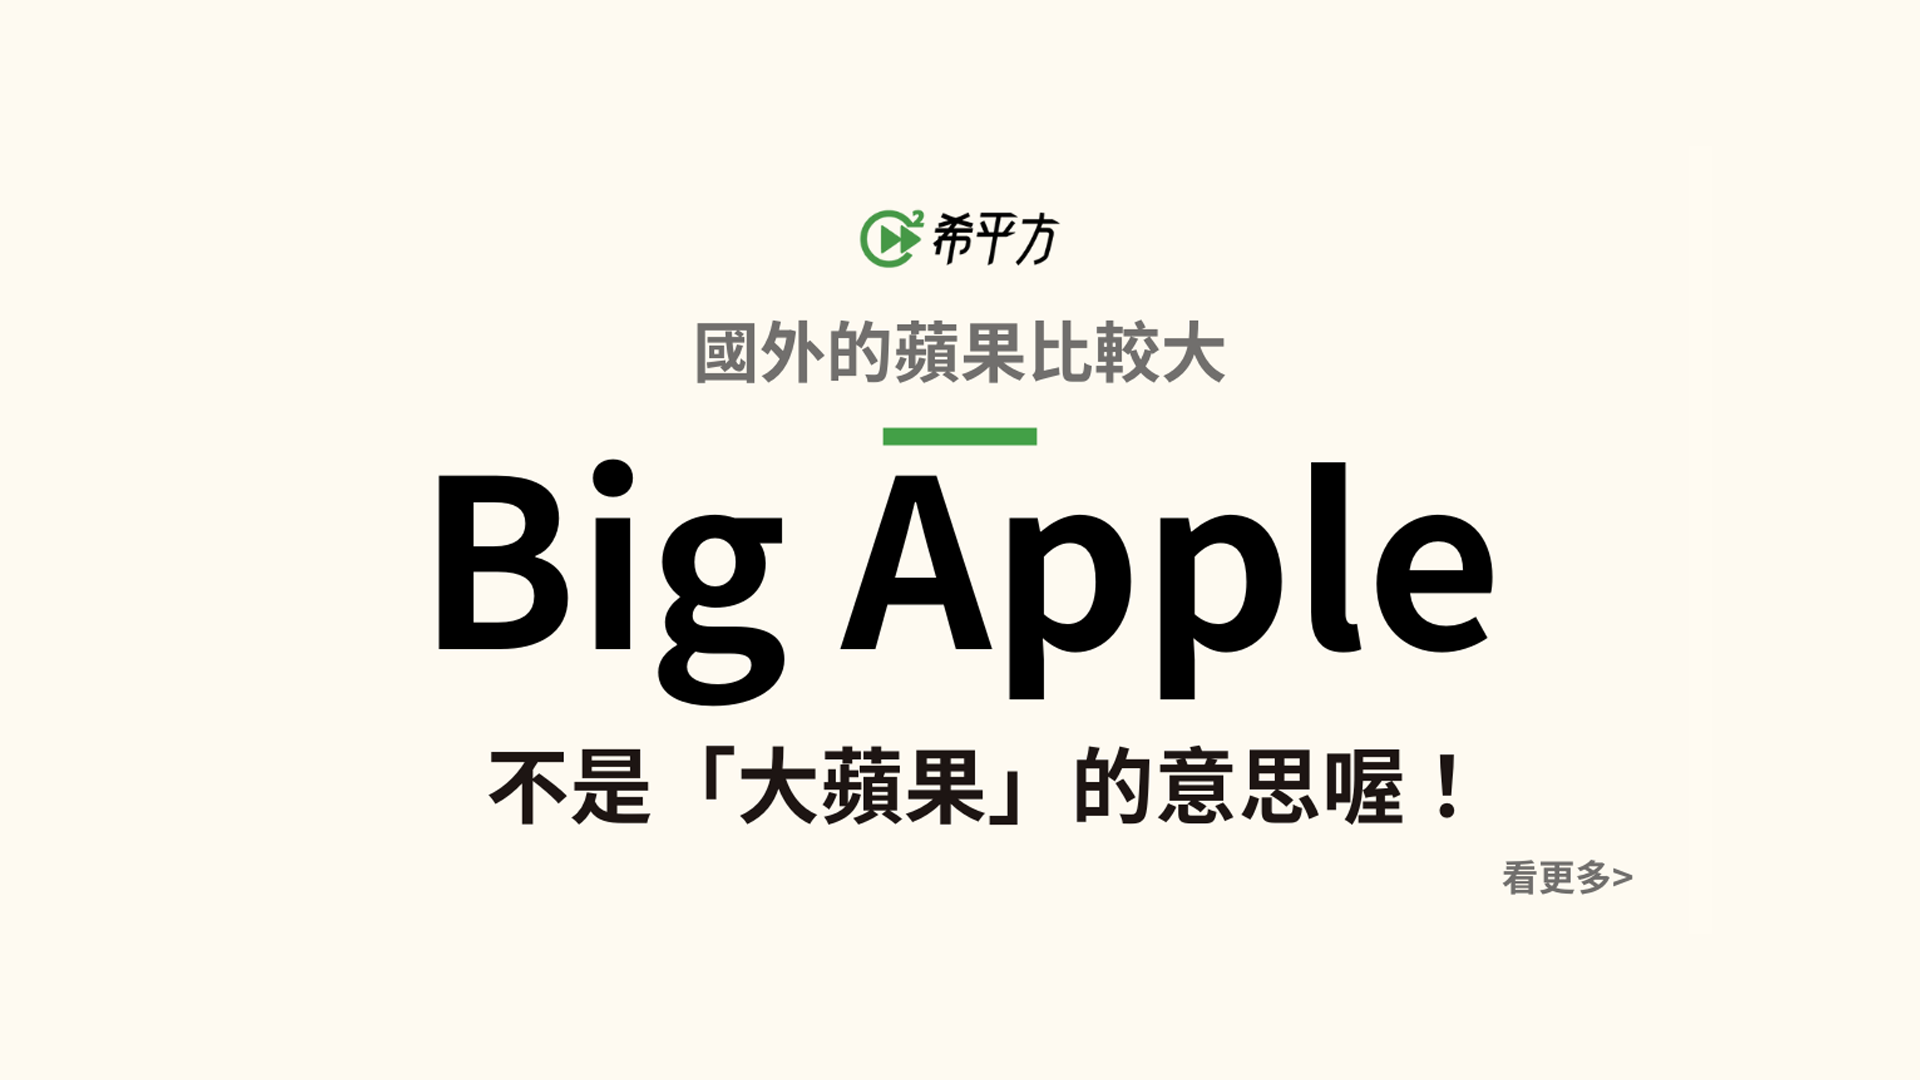 『Big Apple』不是大蘋果的意思啦！來學學 apple 的英文有趣片語！